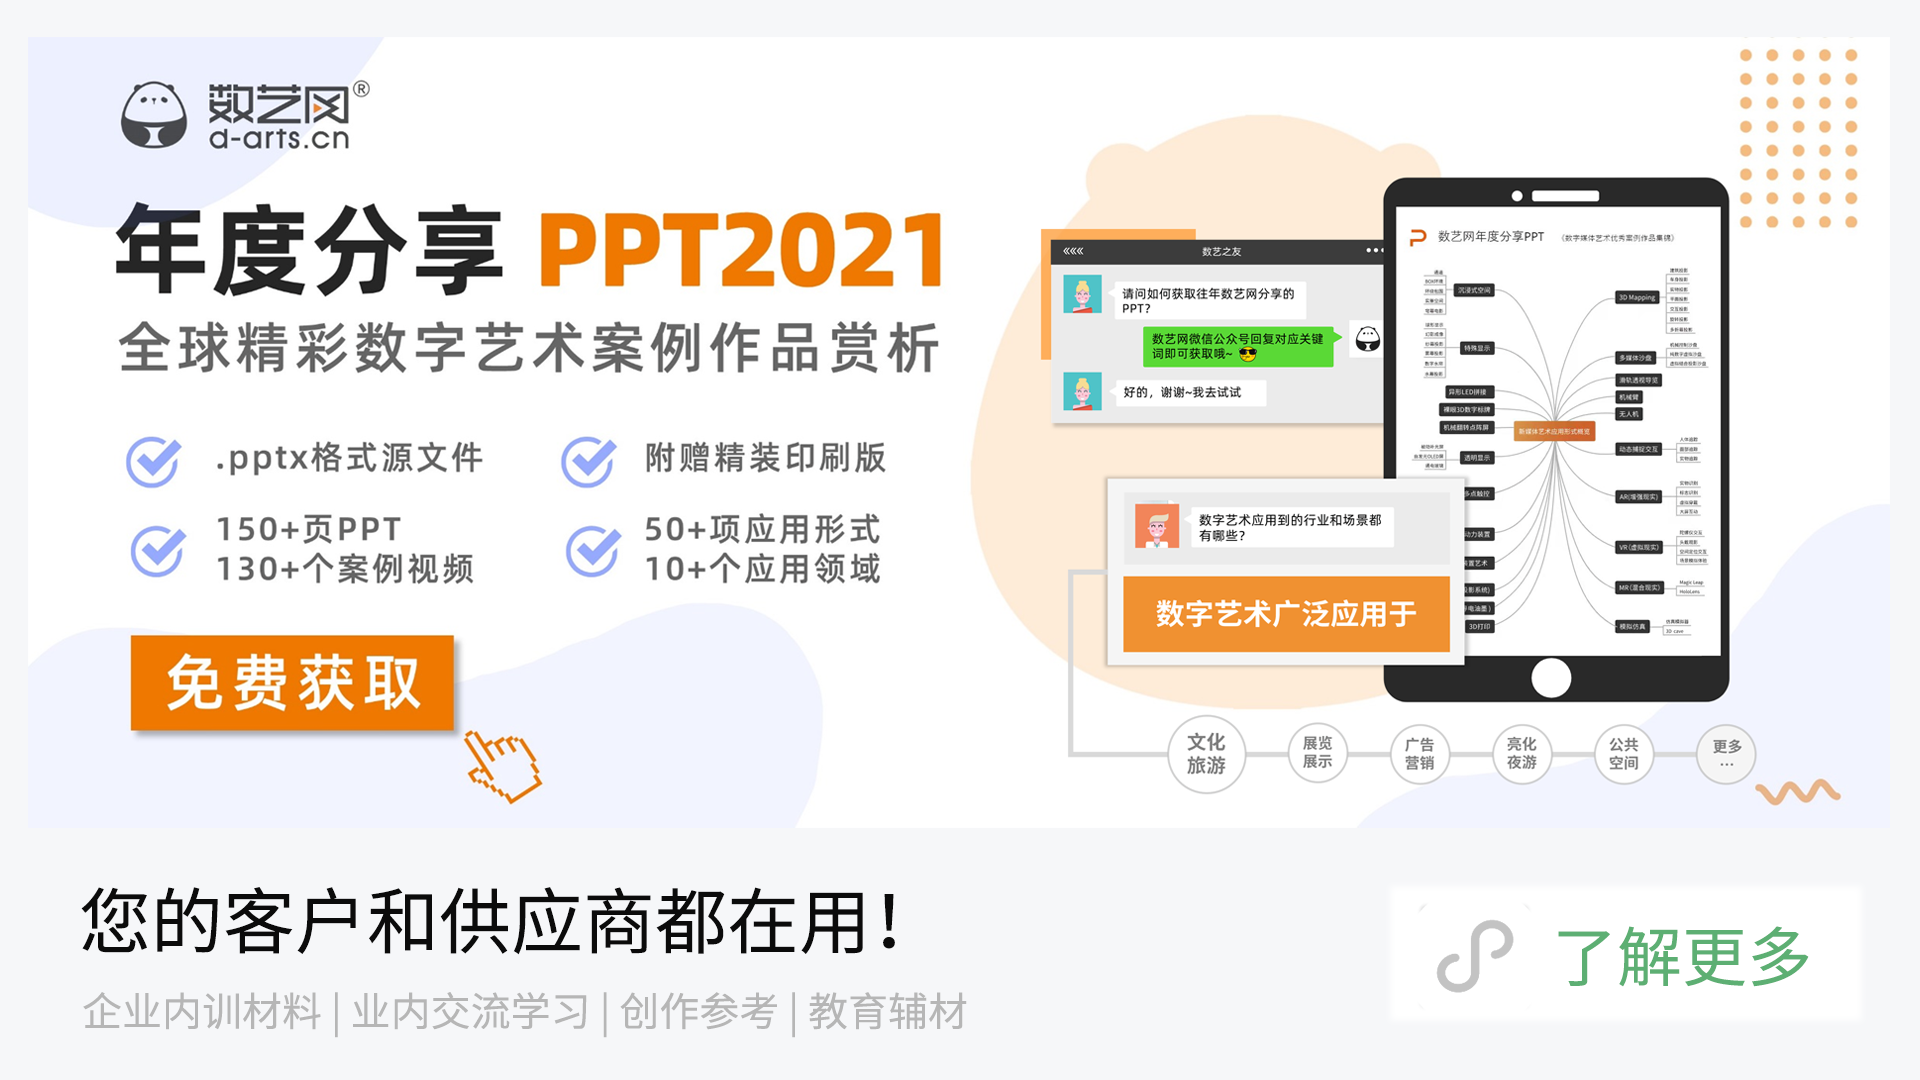 广告图-PPT2021-02.png